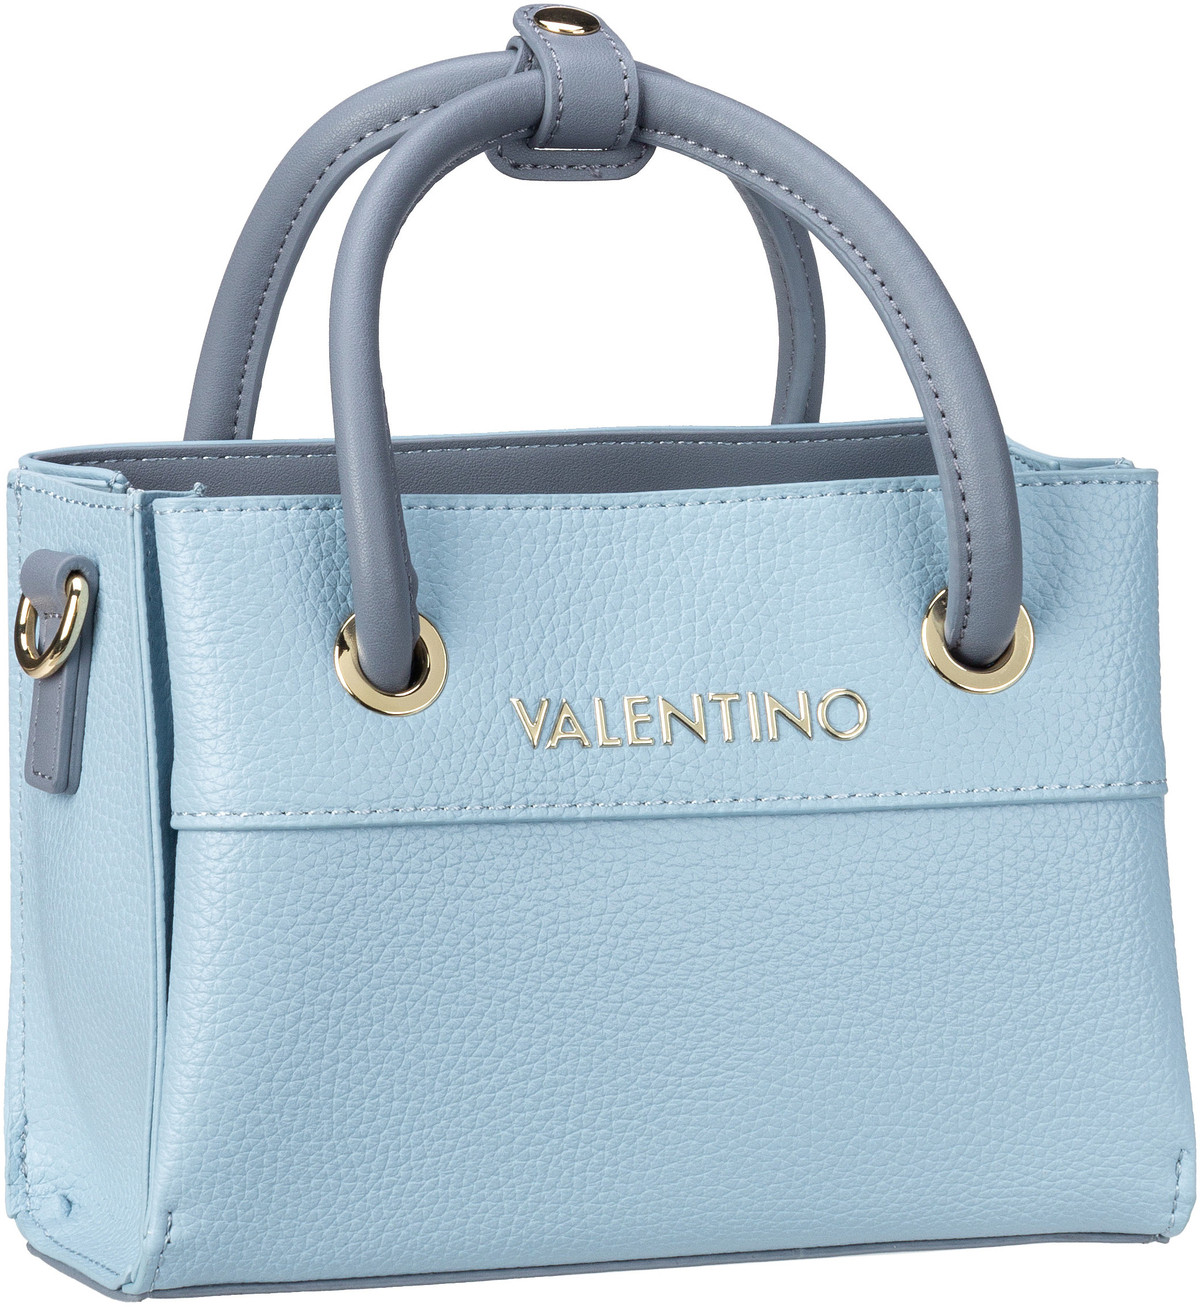 Valentino Alexia Shopping 805  in Blau (2.9 Liter), Handtasche